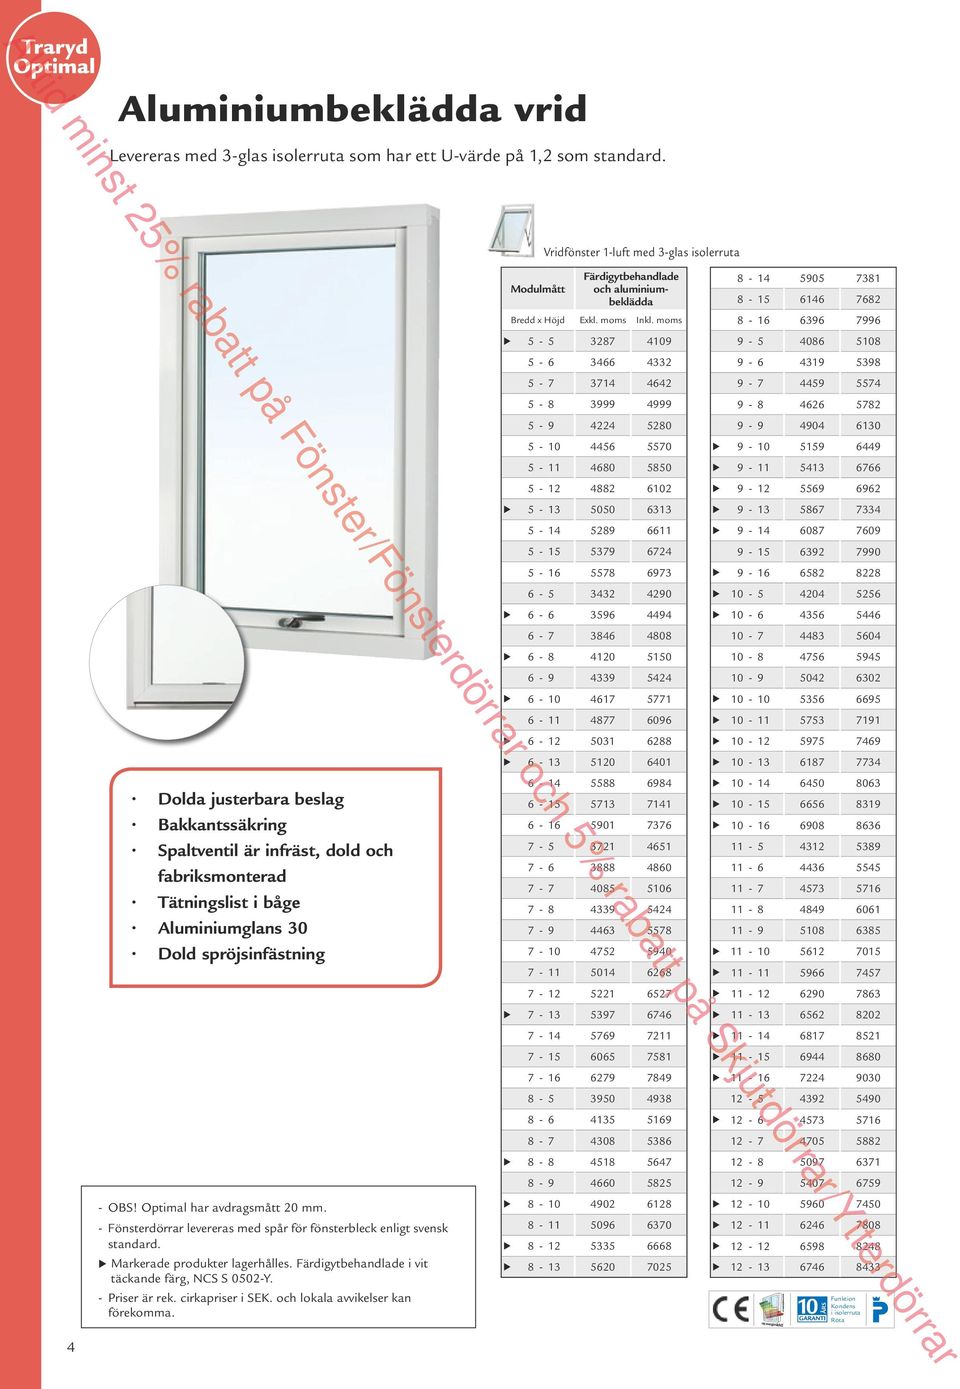 Optimal har avdragsmått 20 mm. - Fönsterdörrar levereras med spår för fönsterbleck enligt svensk standard. Markerade produkter lagerhålles. i vit täckande färg, NCS S 0502-Y. - Priser är rek.